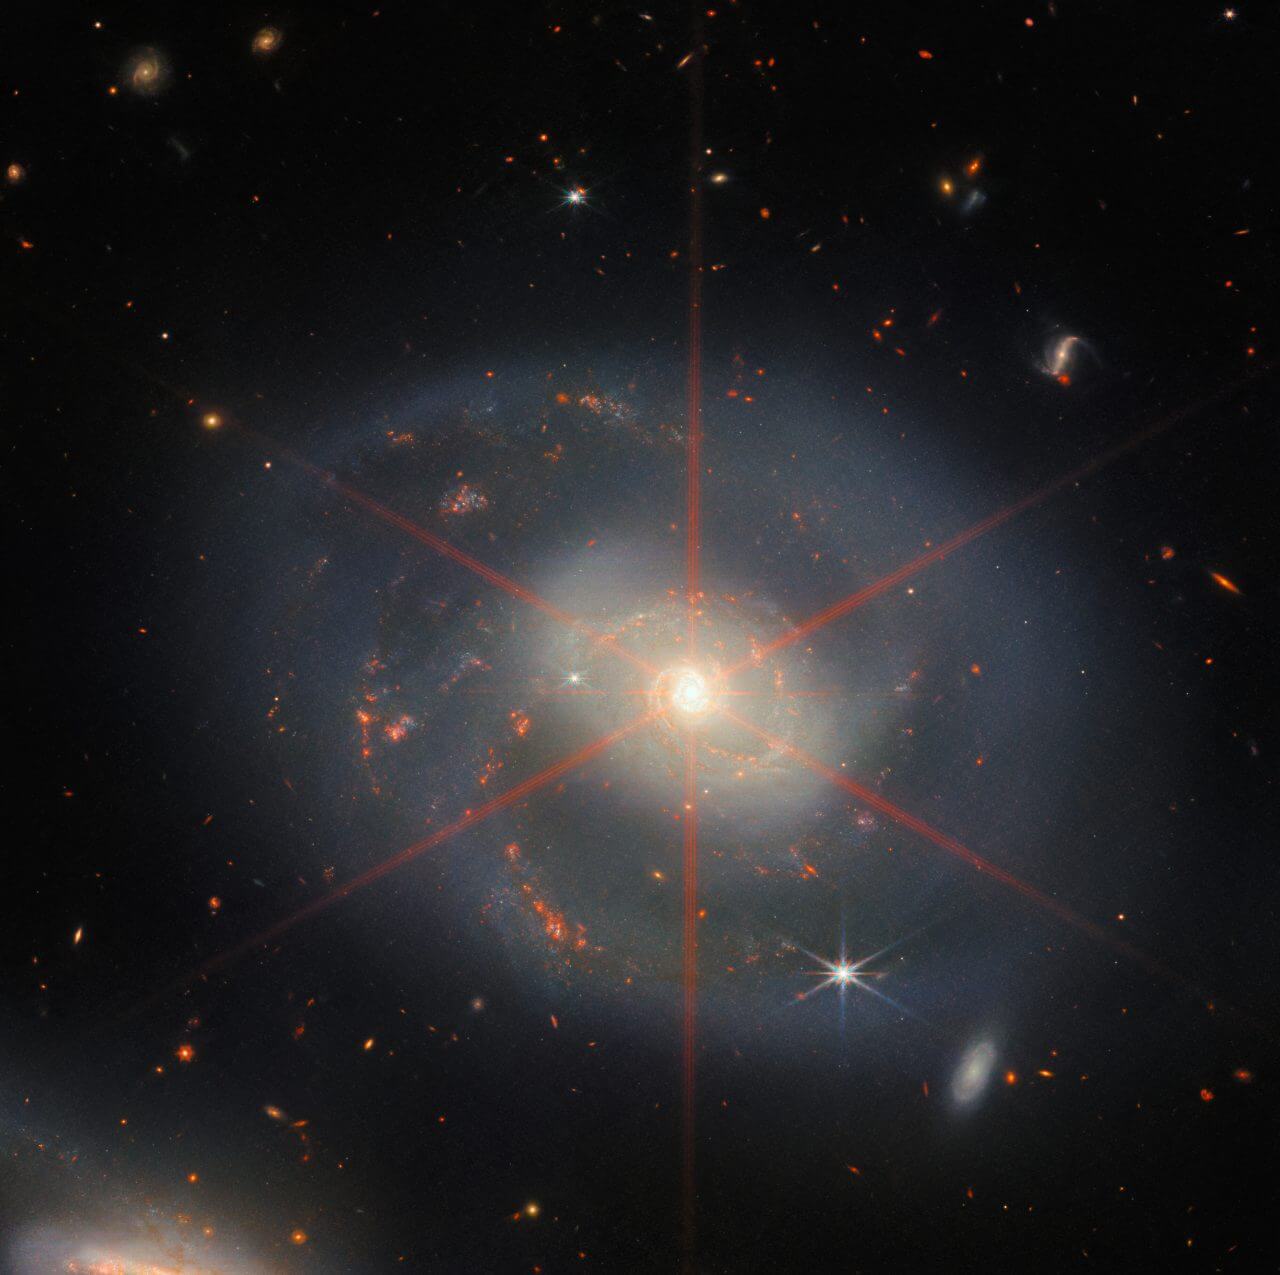 ジェイムズ・ウェッブ宇宙望遠鏡の近赤外線カメラ（NIRCam）で撮影された渦巻銀河「NGC 7469」